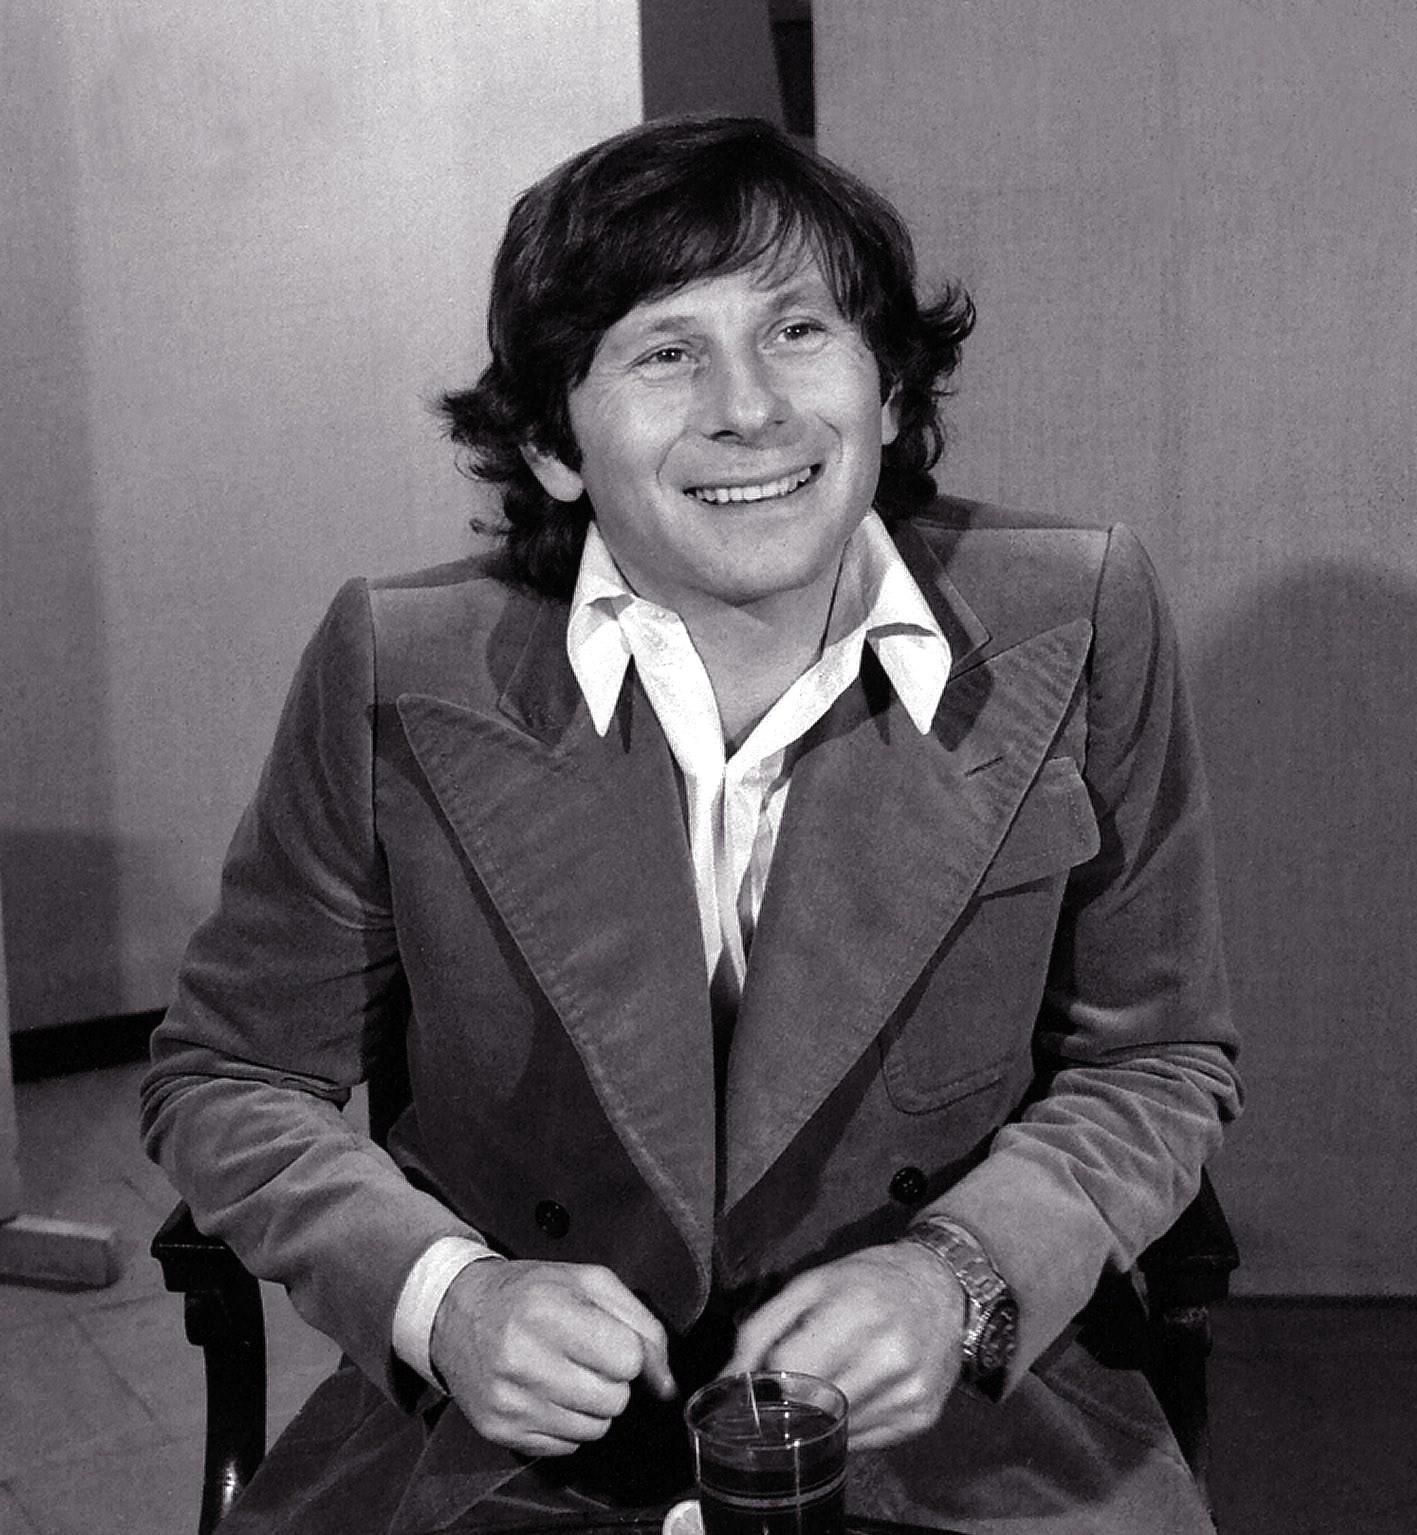 Roman Polanski in 1977 